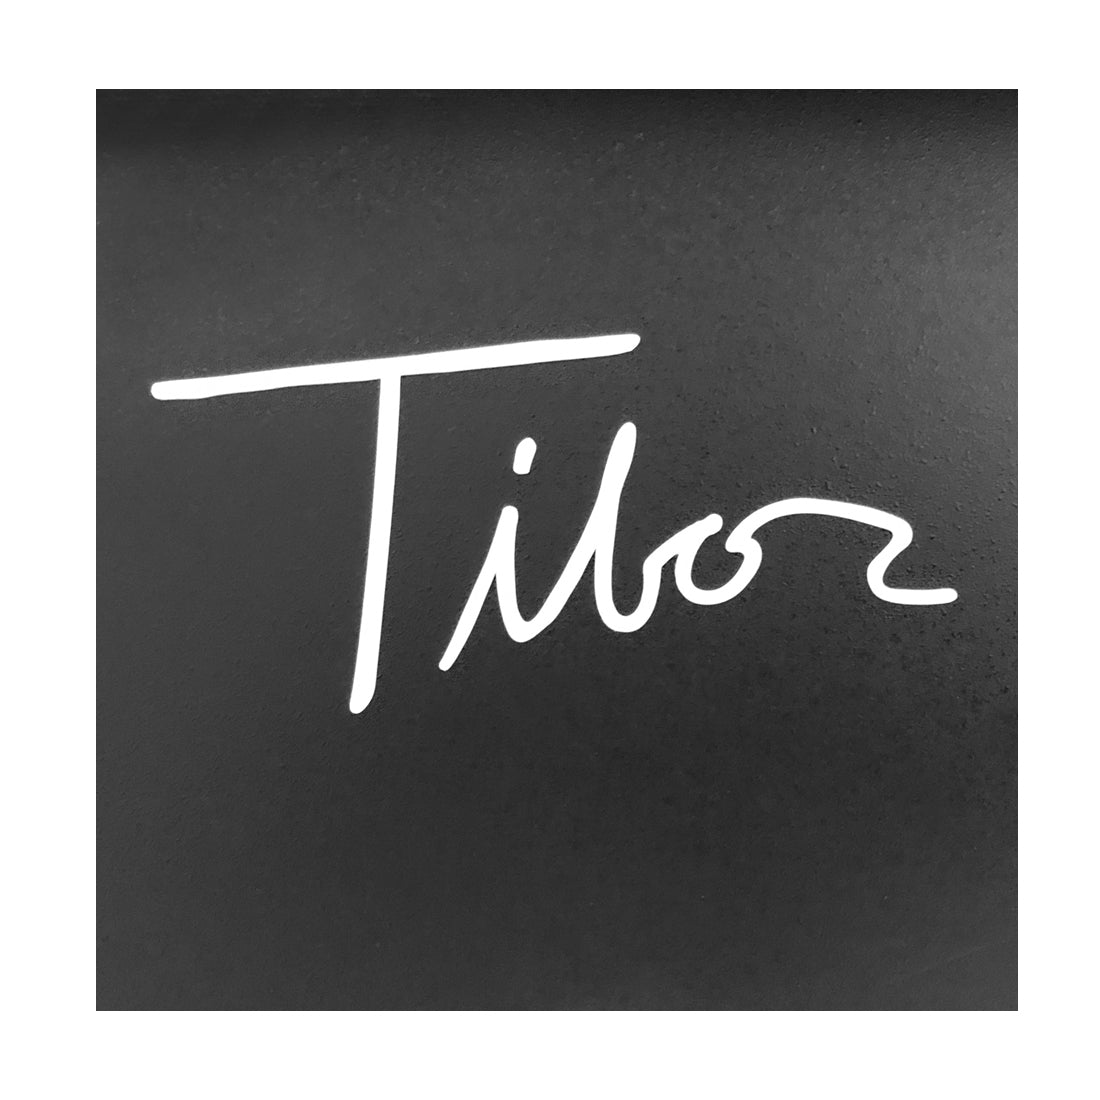 Tibor Vinyl Letterings